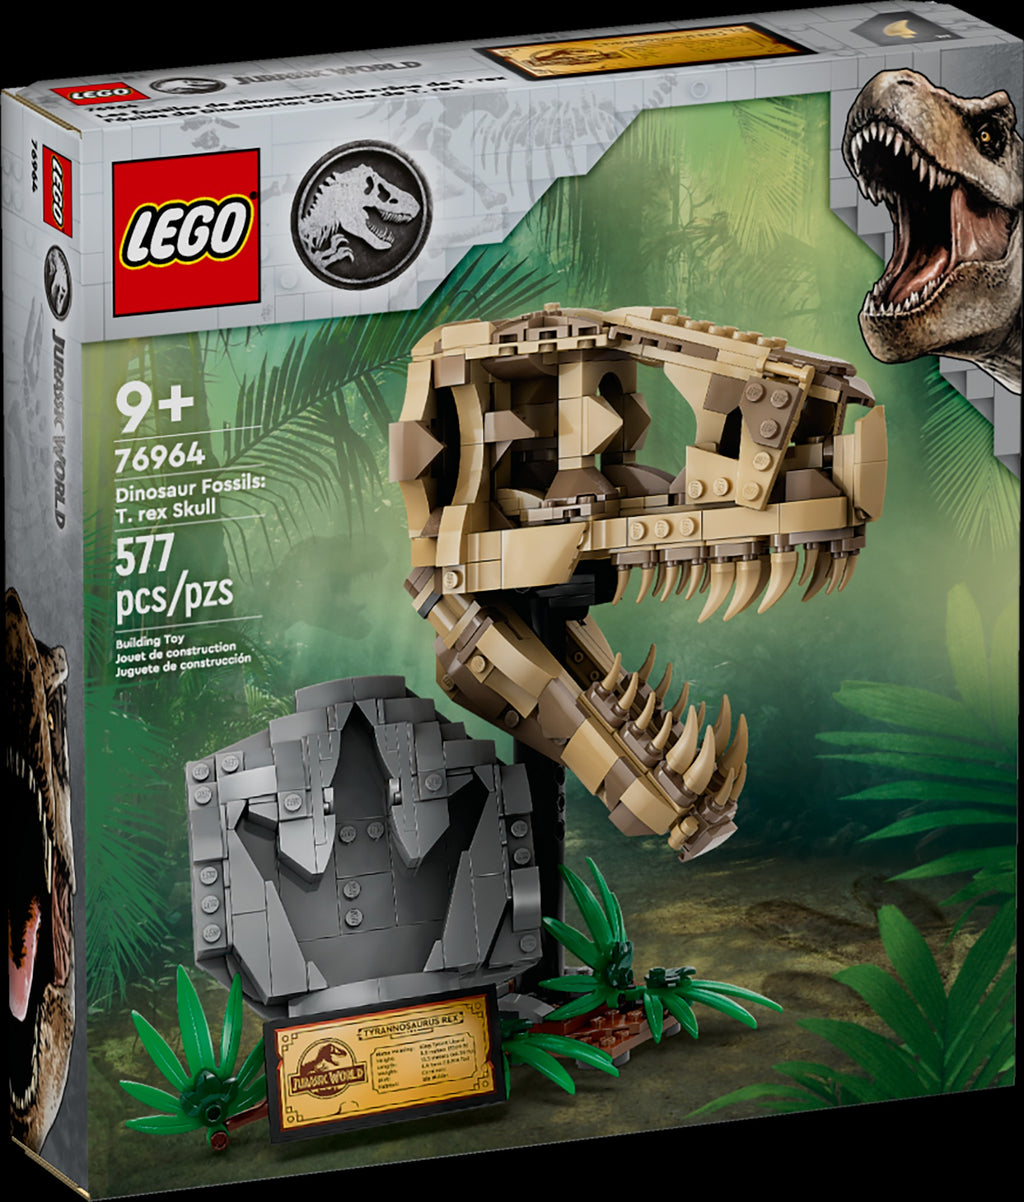 Lego: Jurassic World - Dinosaur Fossils: T. rex Skull (76964)